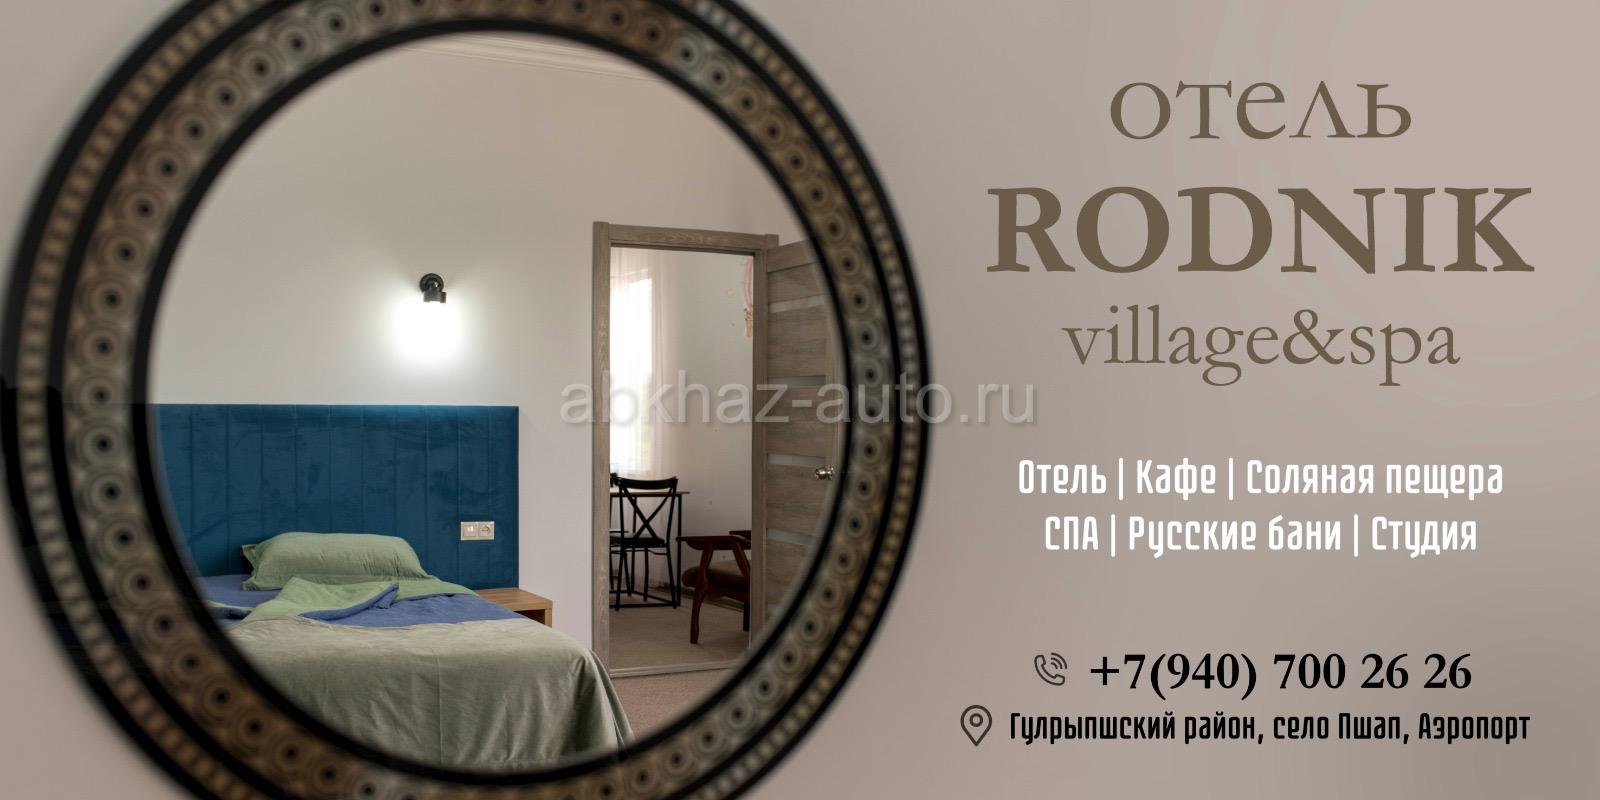 Отель Rodnik villagespa